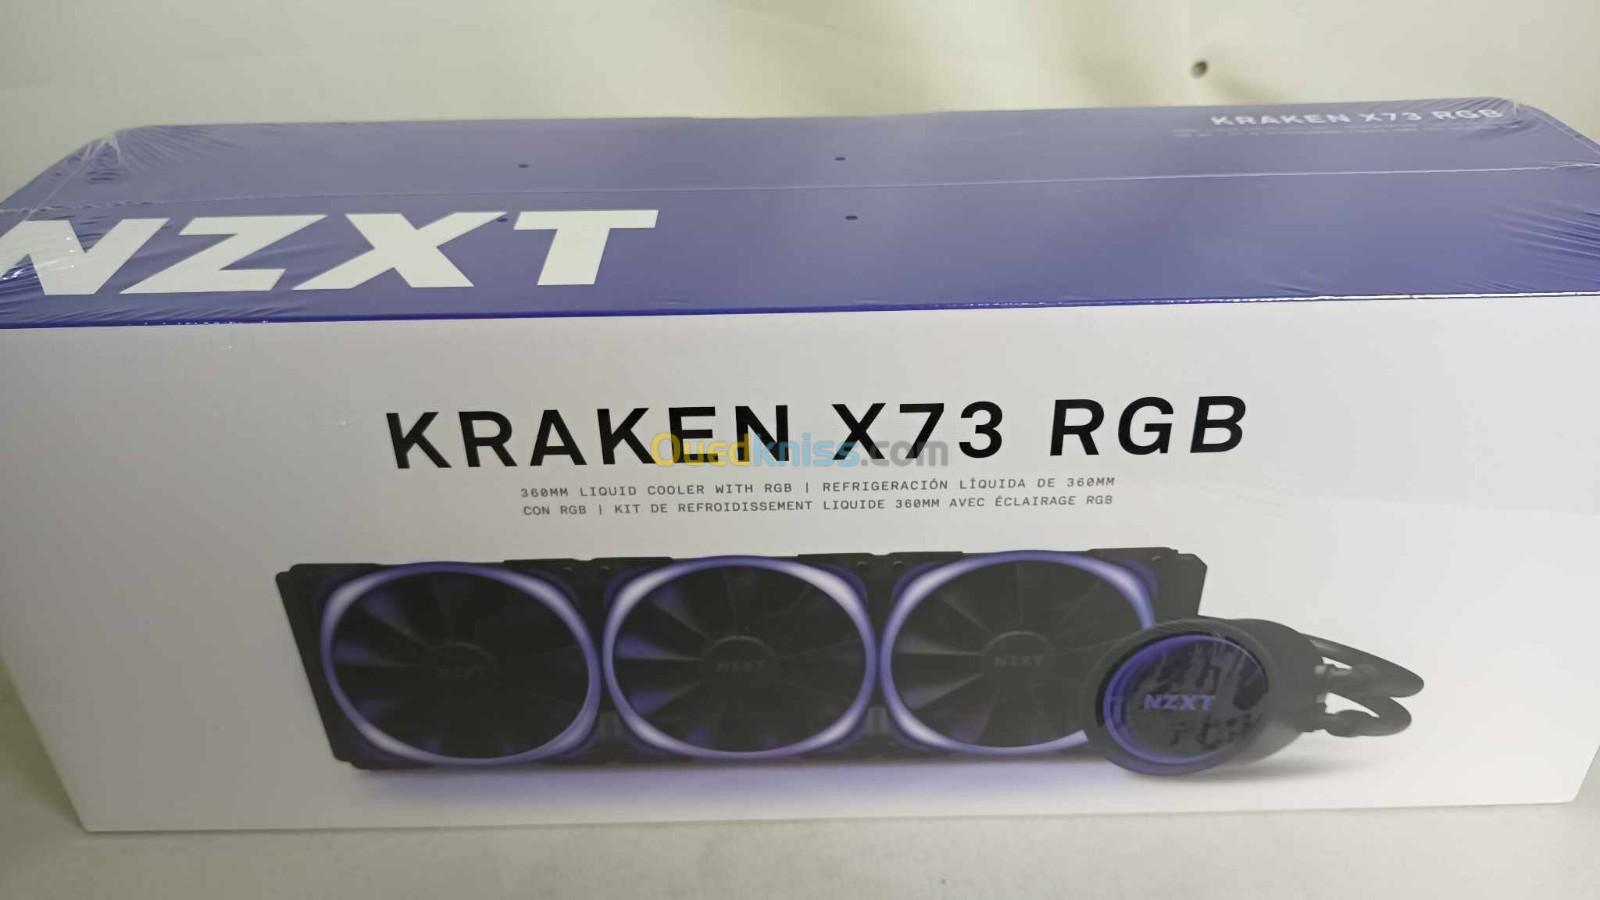 NZXT Kraken X73 Kit de Watercooling tout-en-un 360mm pour processeur avec rétroéclairage RGB